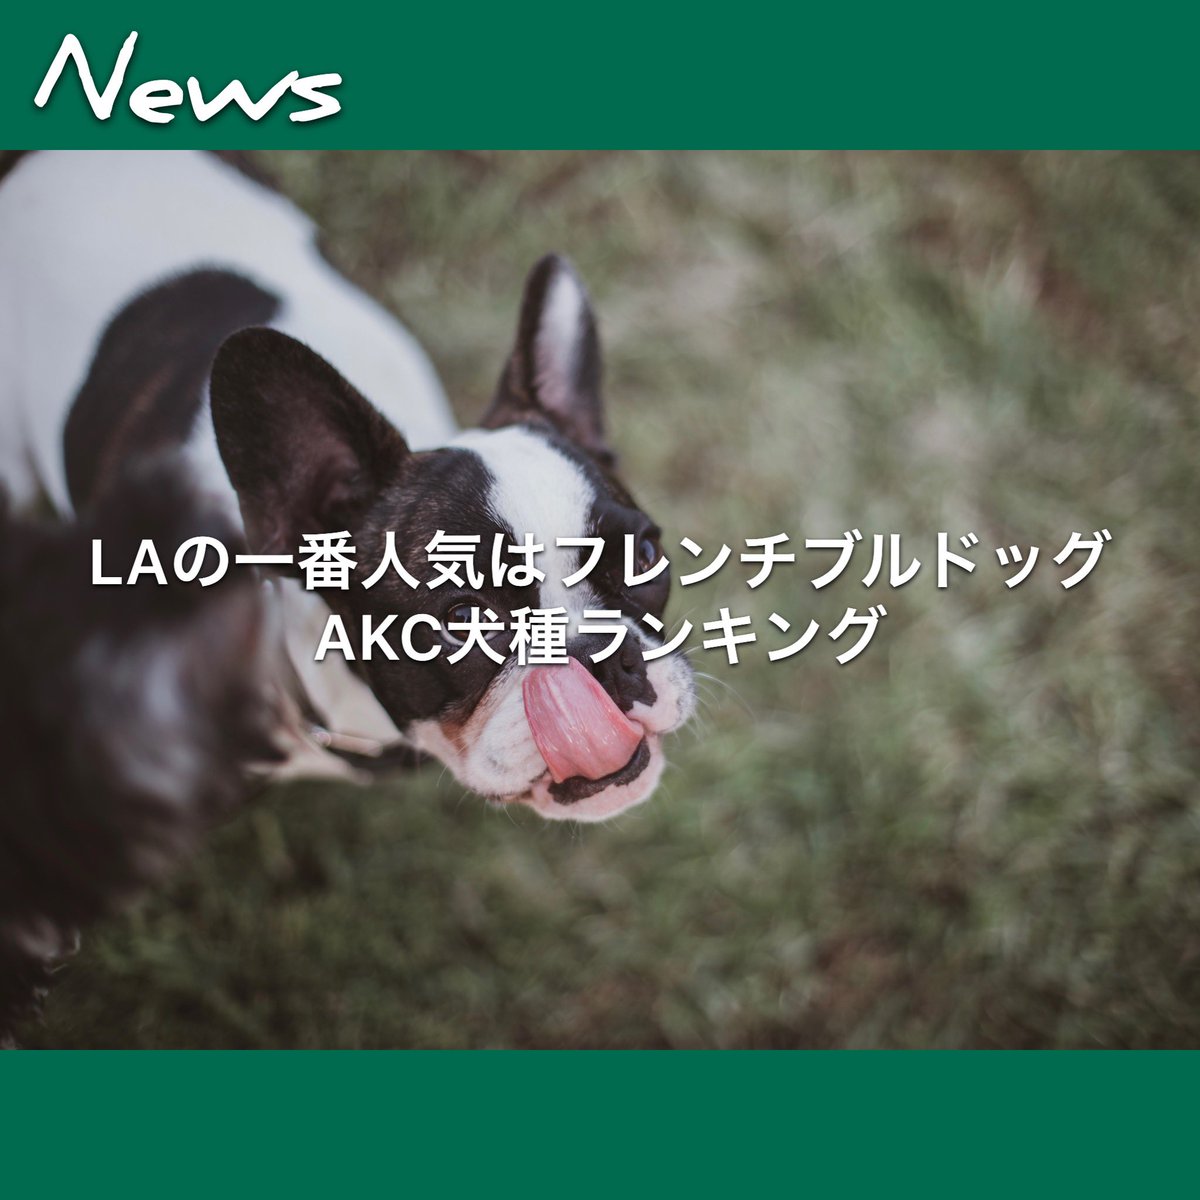 Weekly Lalala ｌａの一番人気はフレンチ ブルドッグ ａｋｃ犬種ランキング ロサンゼルス16日 アメリカン ケネルクラブ ａｋｃ が毎年出している 人気の犬種ランキングが16日に発表され ロサンゼルスの一番人気はフレンチ ブルドッグだった